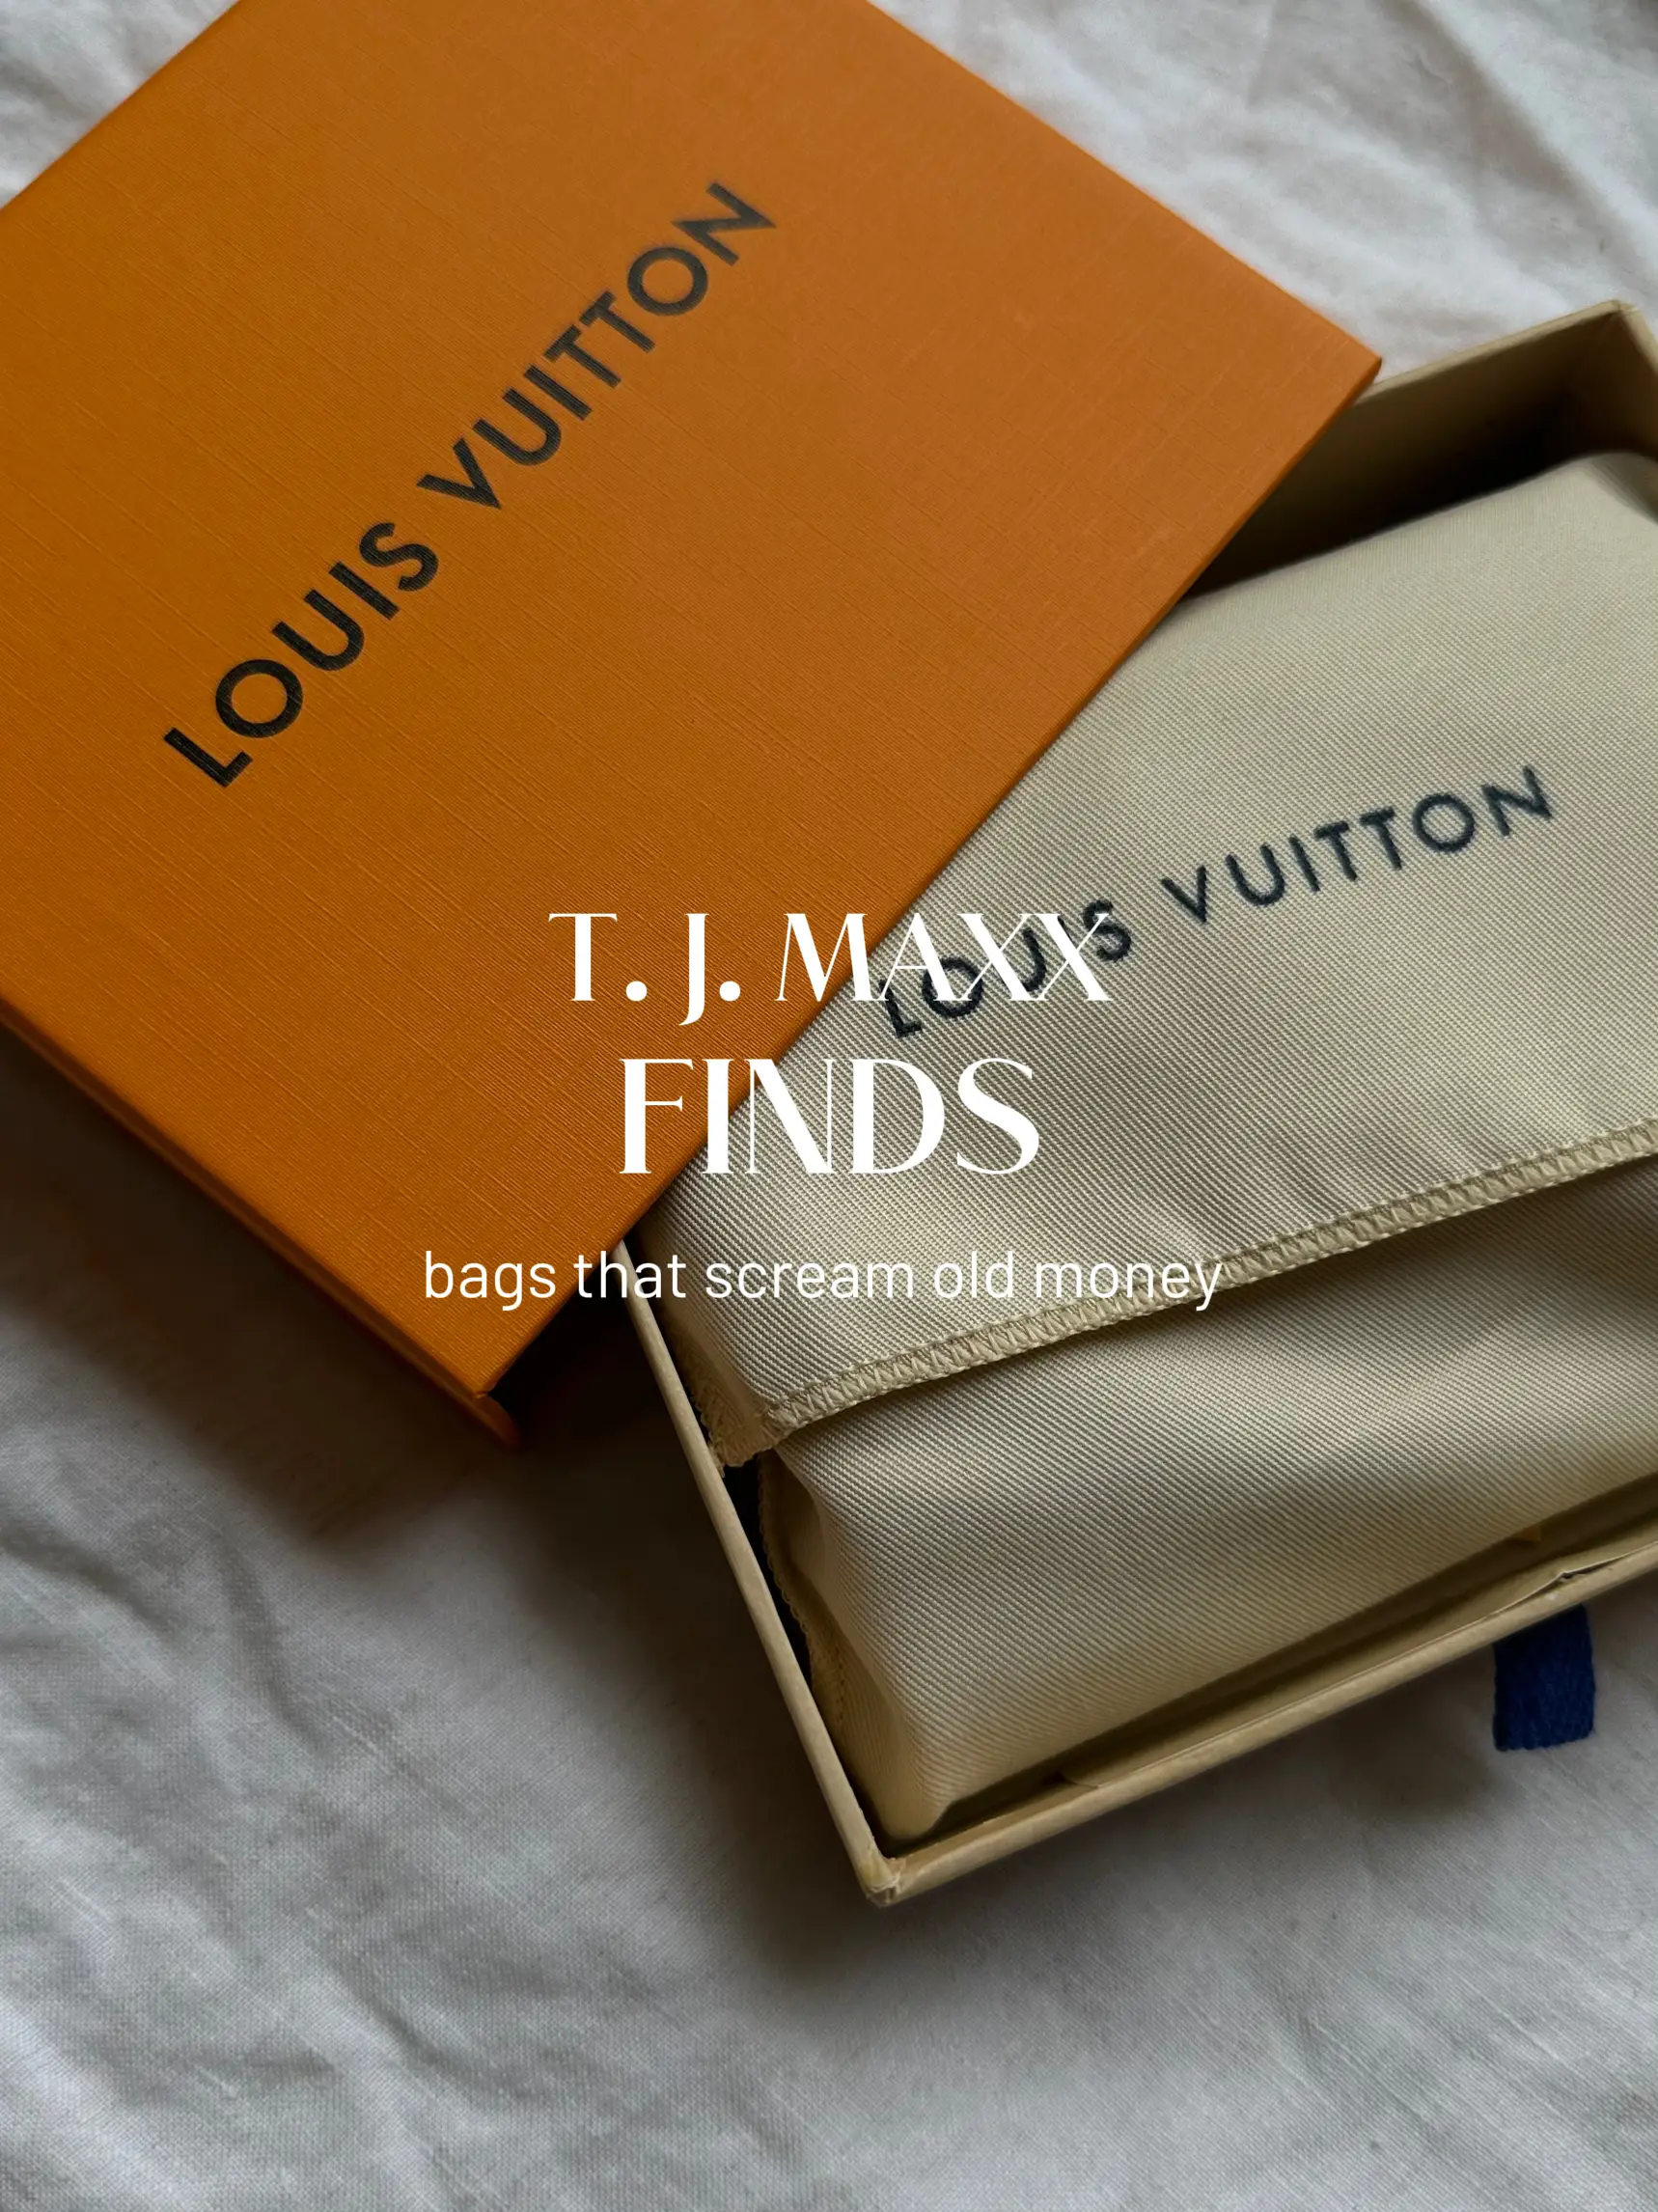 Louis Vuitton at TJ Maxx?